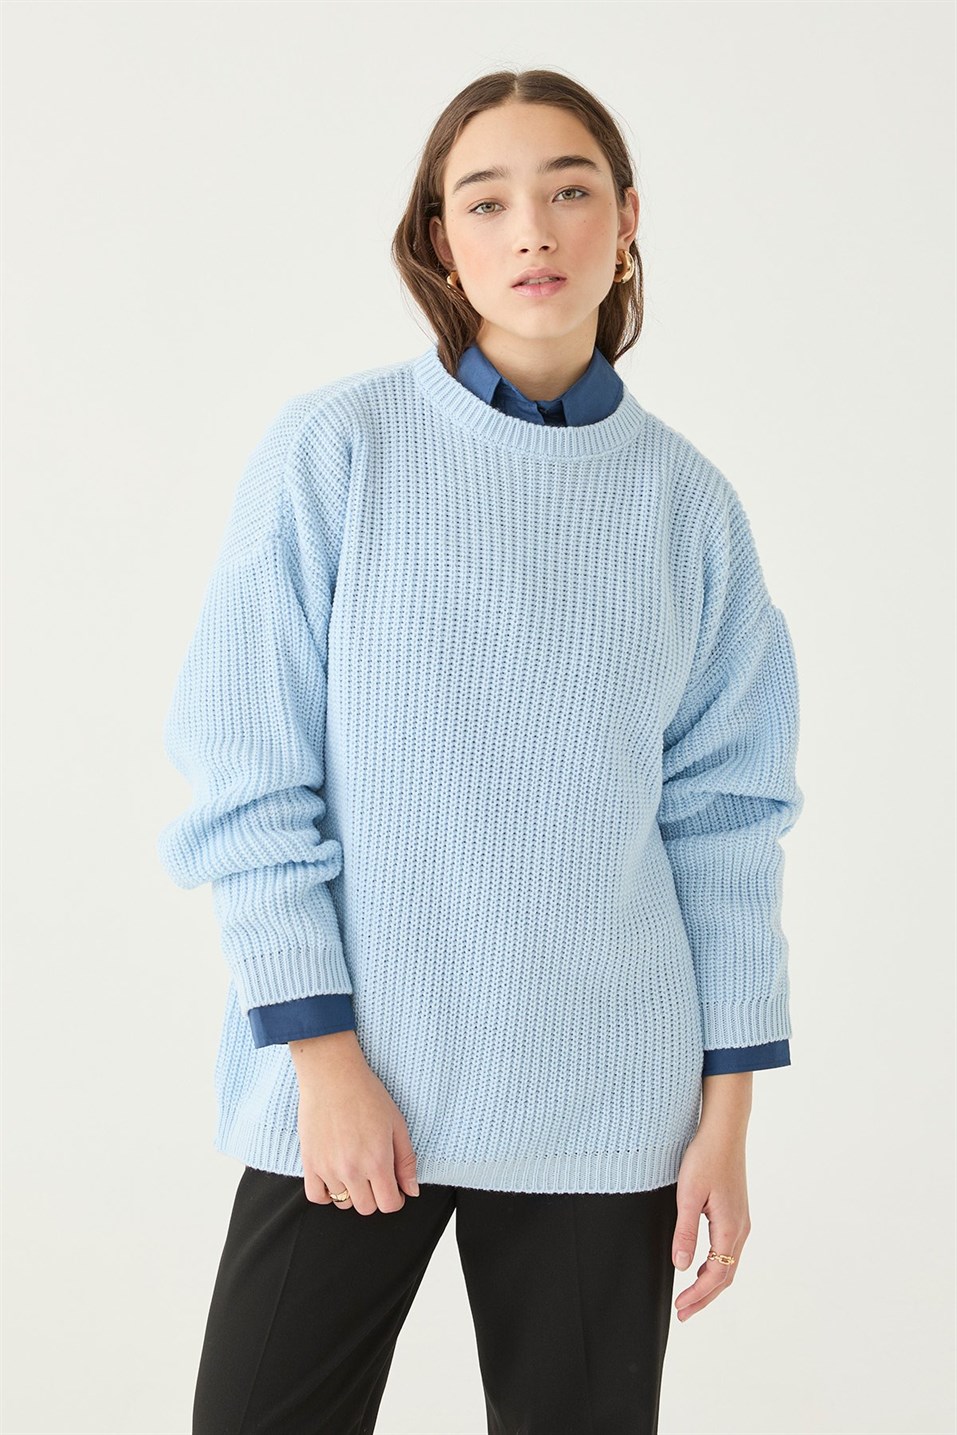 Icy Blue Oversize Knitwear Sweatshirt